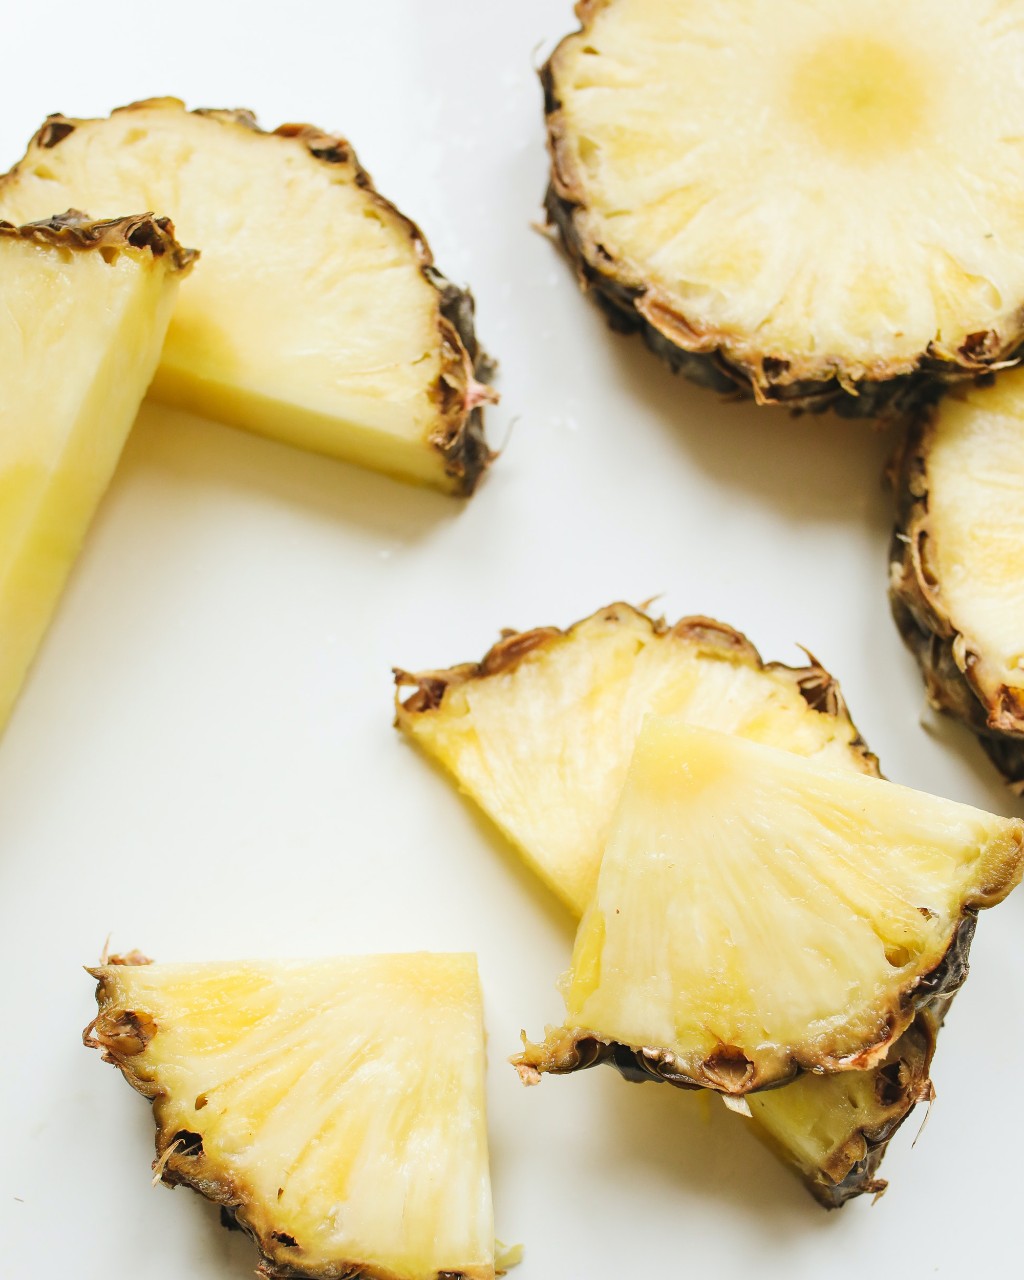 Histoire, utilisations et valeur nutritionnelle de l'ananas - Wikifarmer